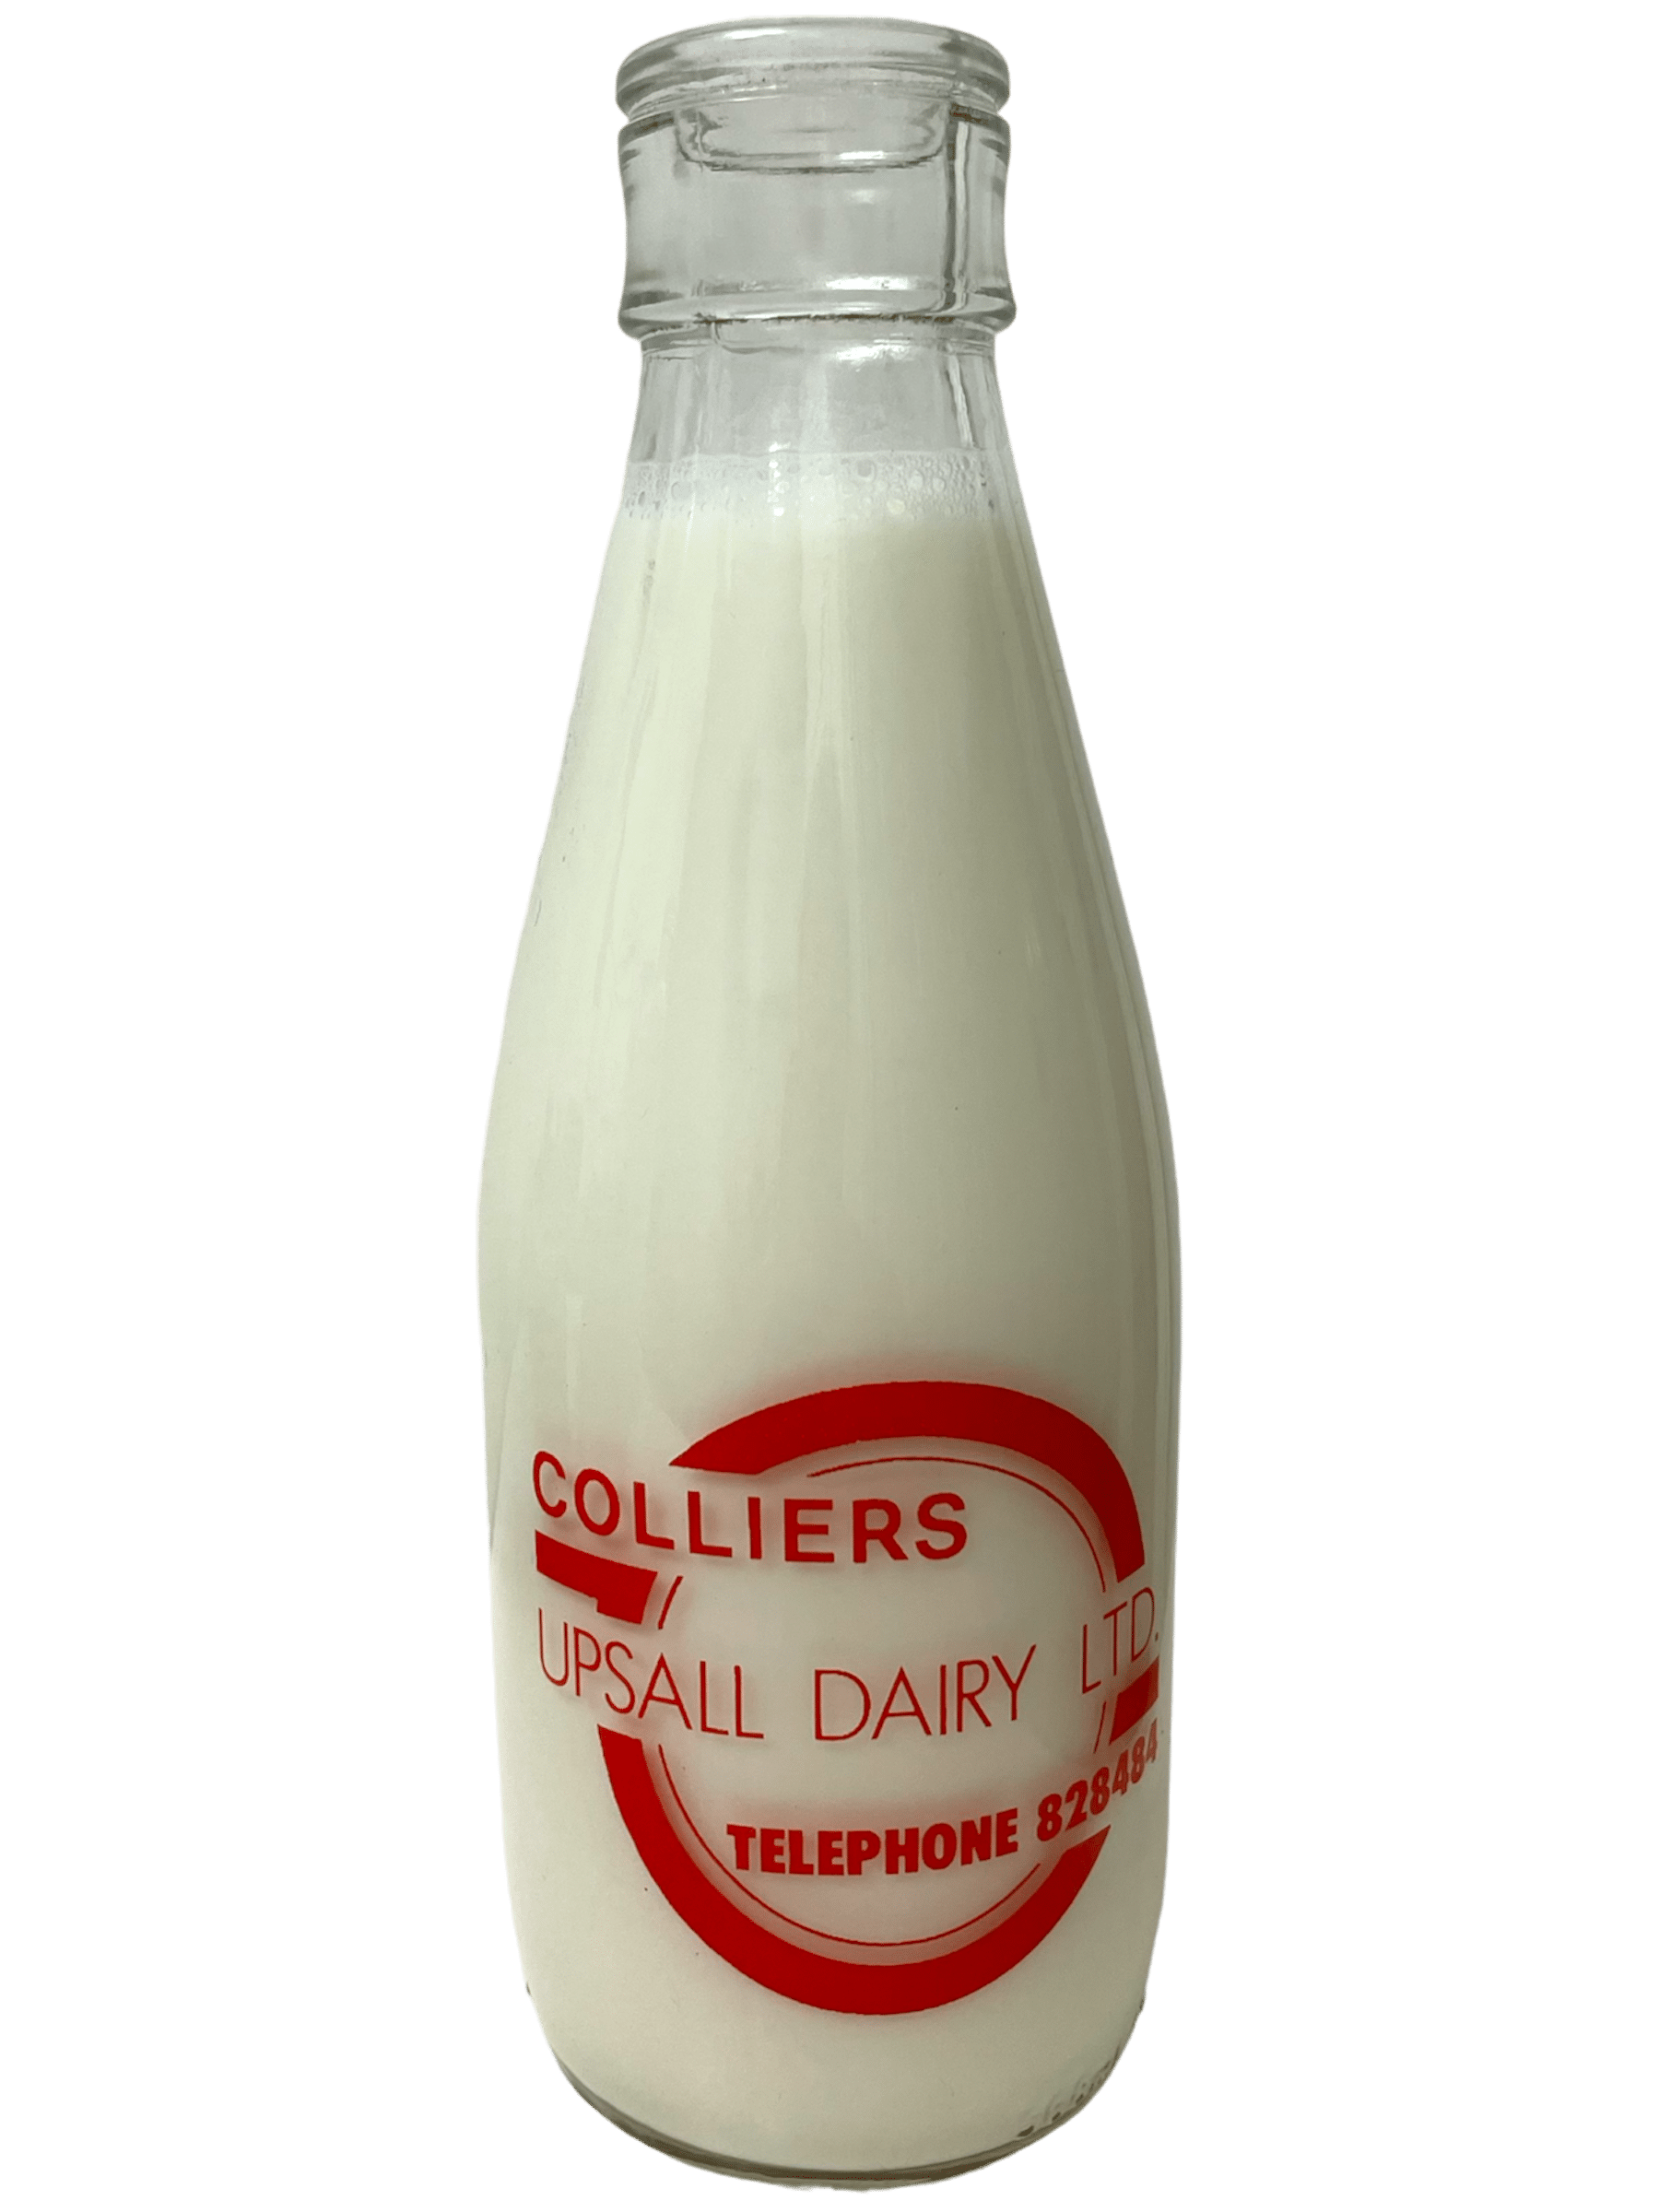 Colliers Upsall Dairy - www.Kelis.info #KelisTheBottleBank